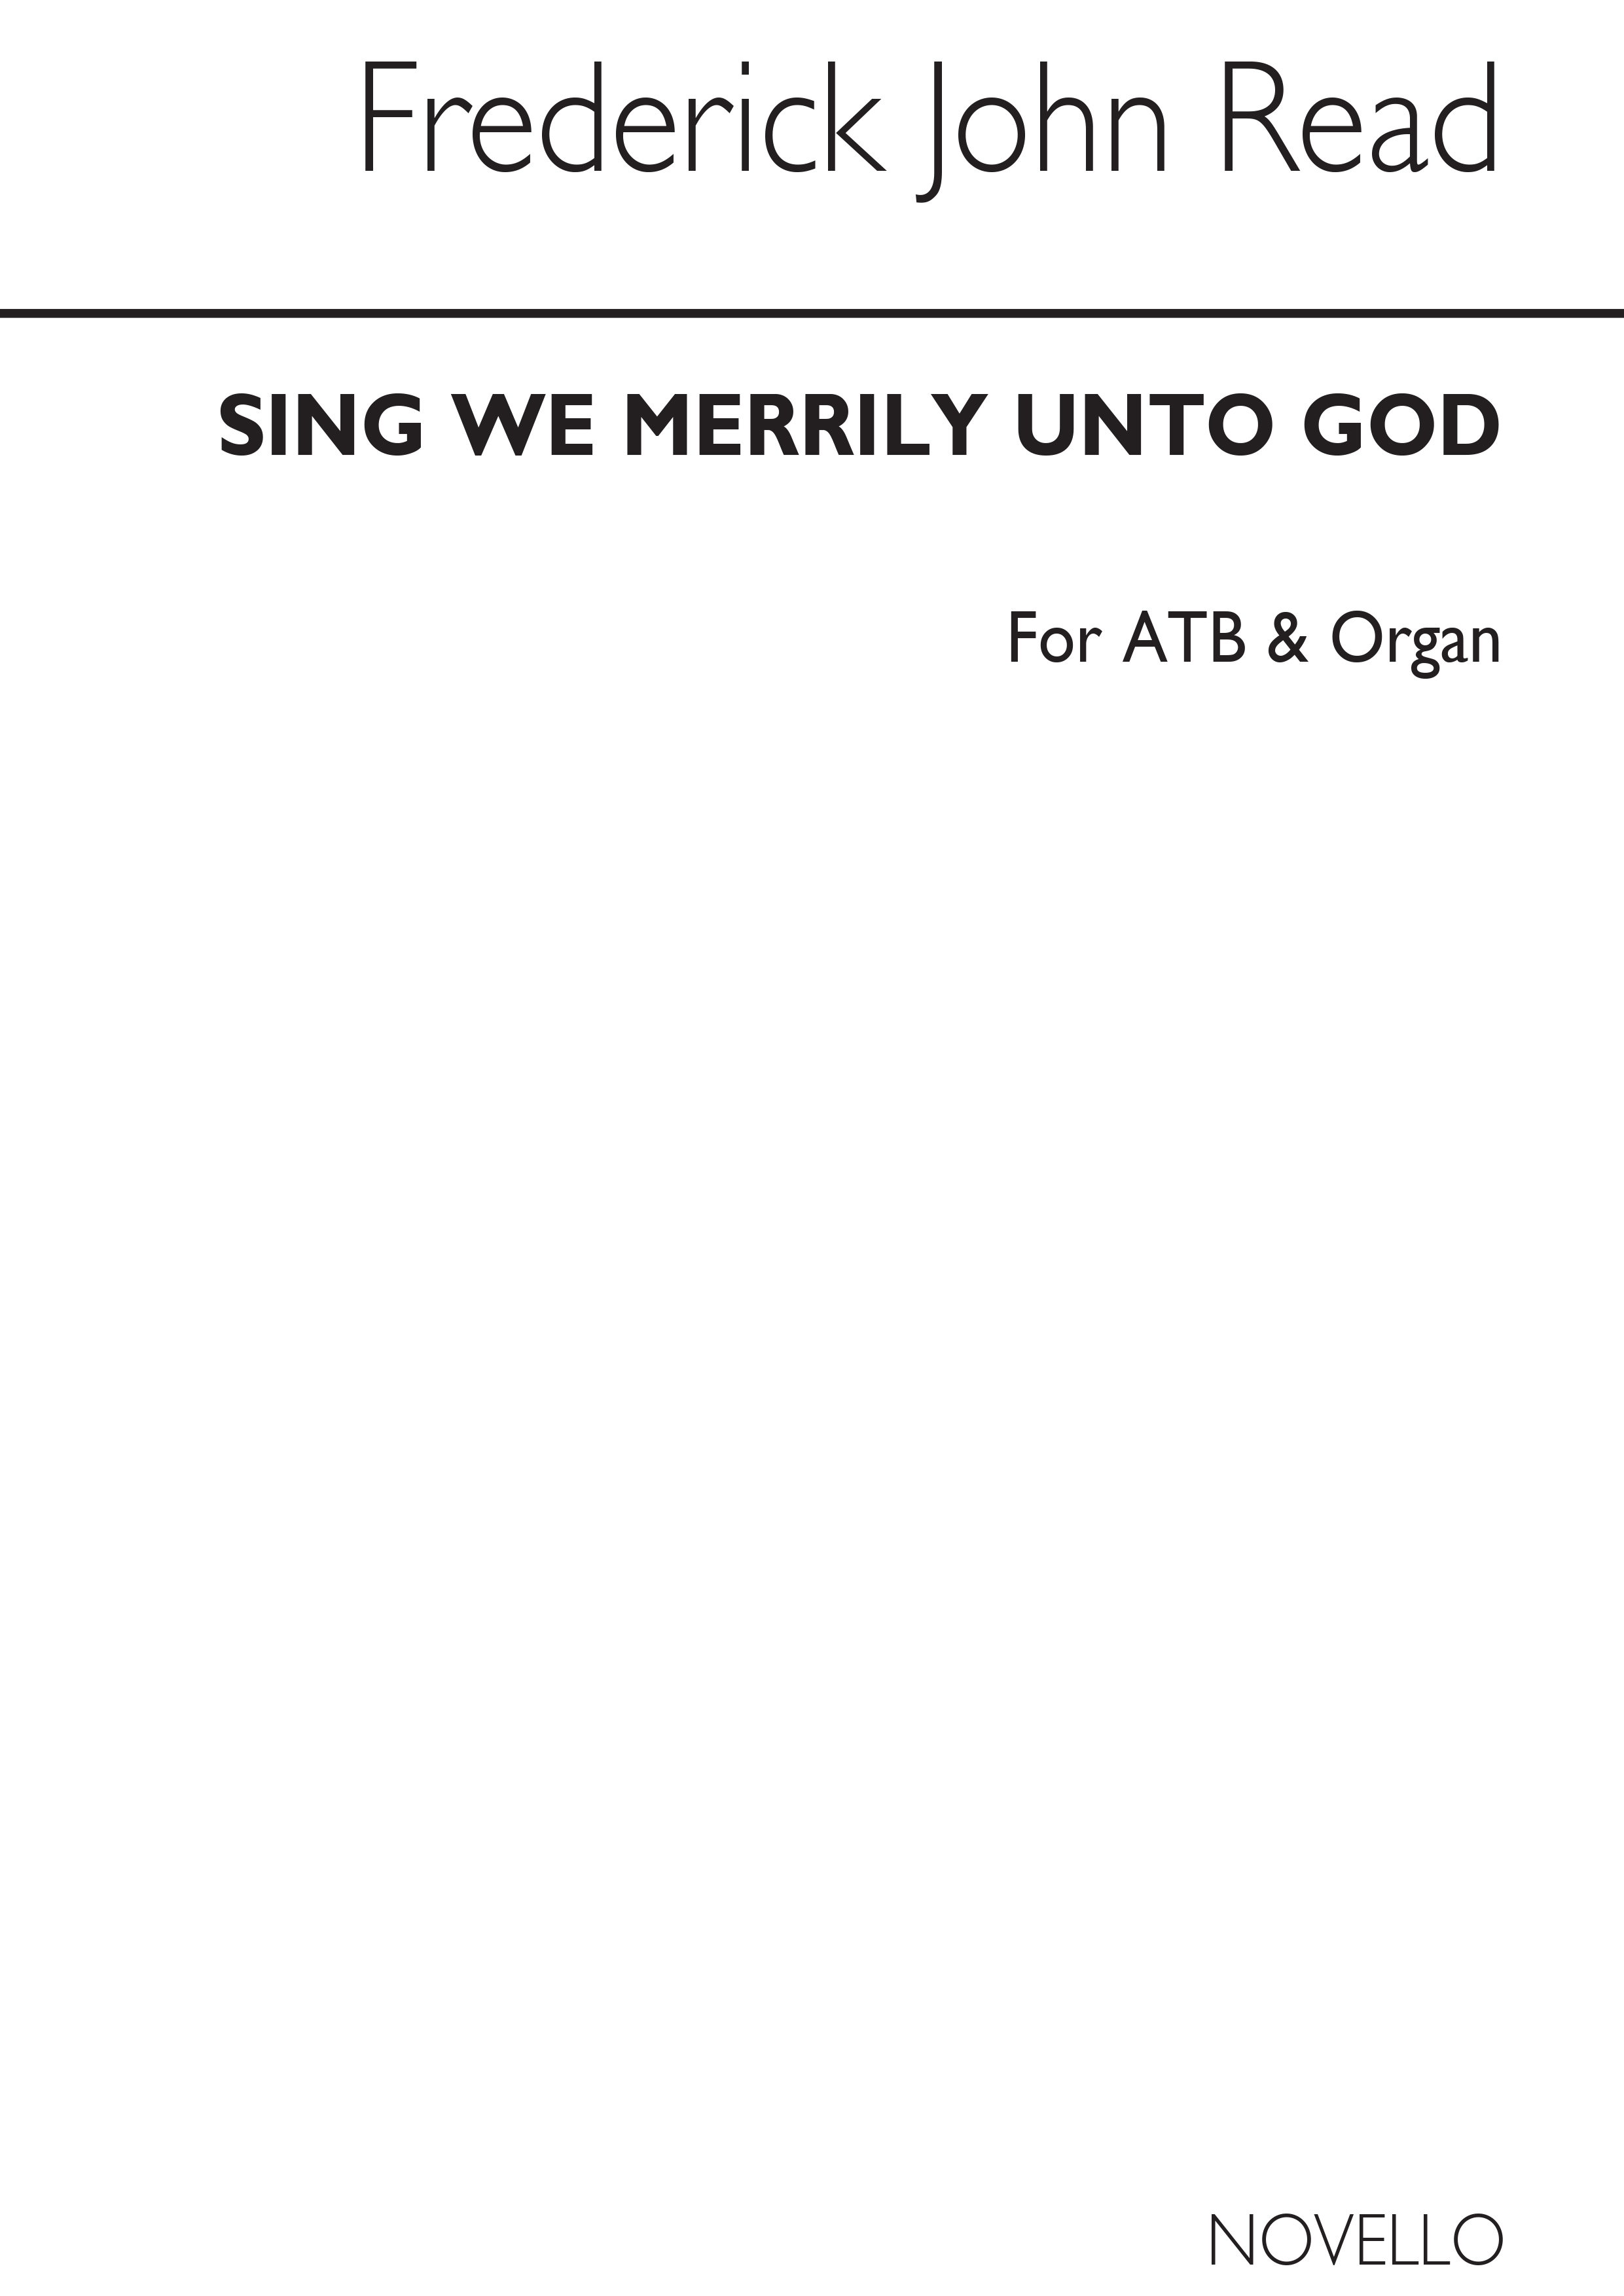 Read, F Sing We Merrily Unto God Atb/Organ